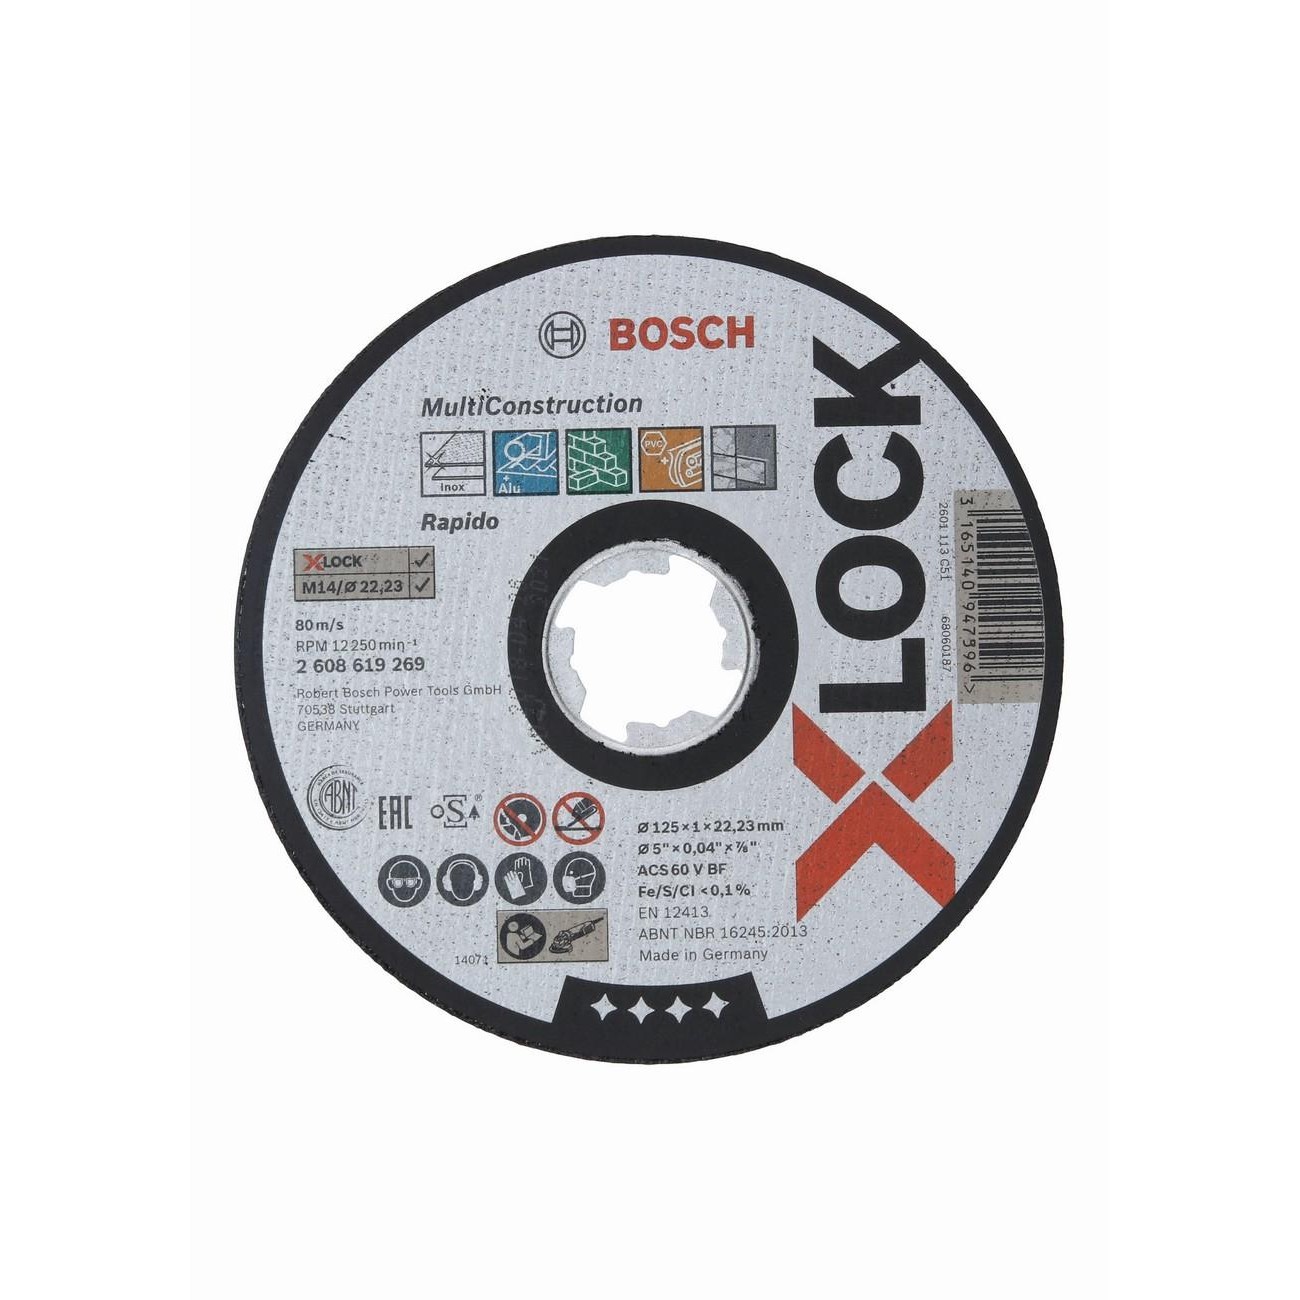 BOSCH Professional X-LOCK Диск за рязане 125x1x22.23 мм (2608619269)